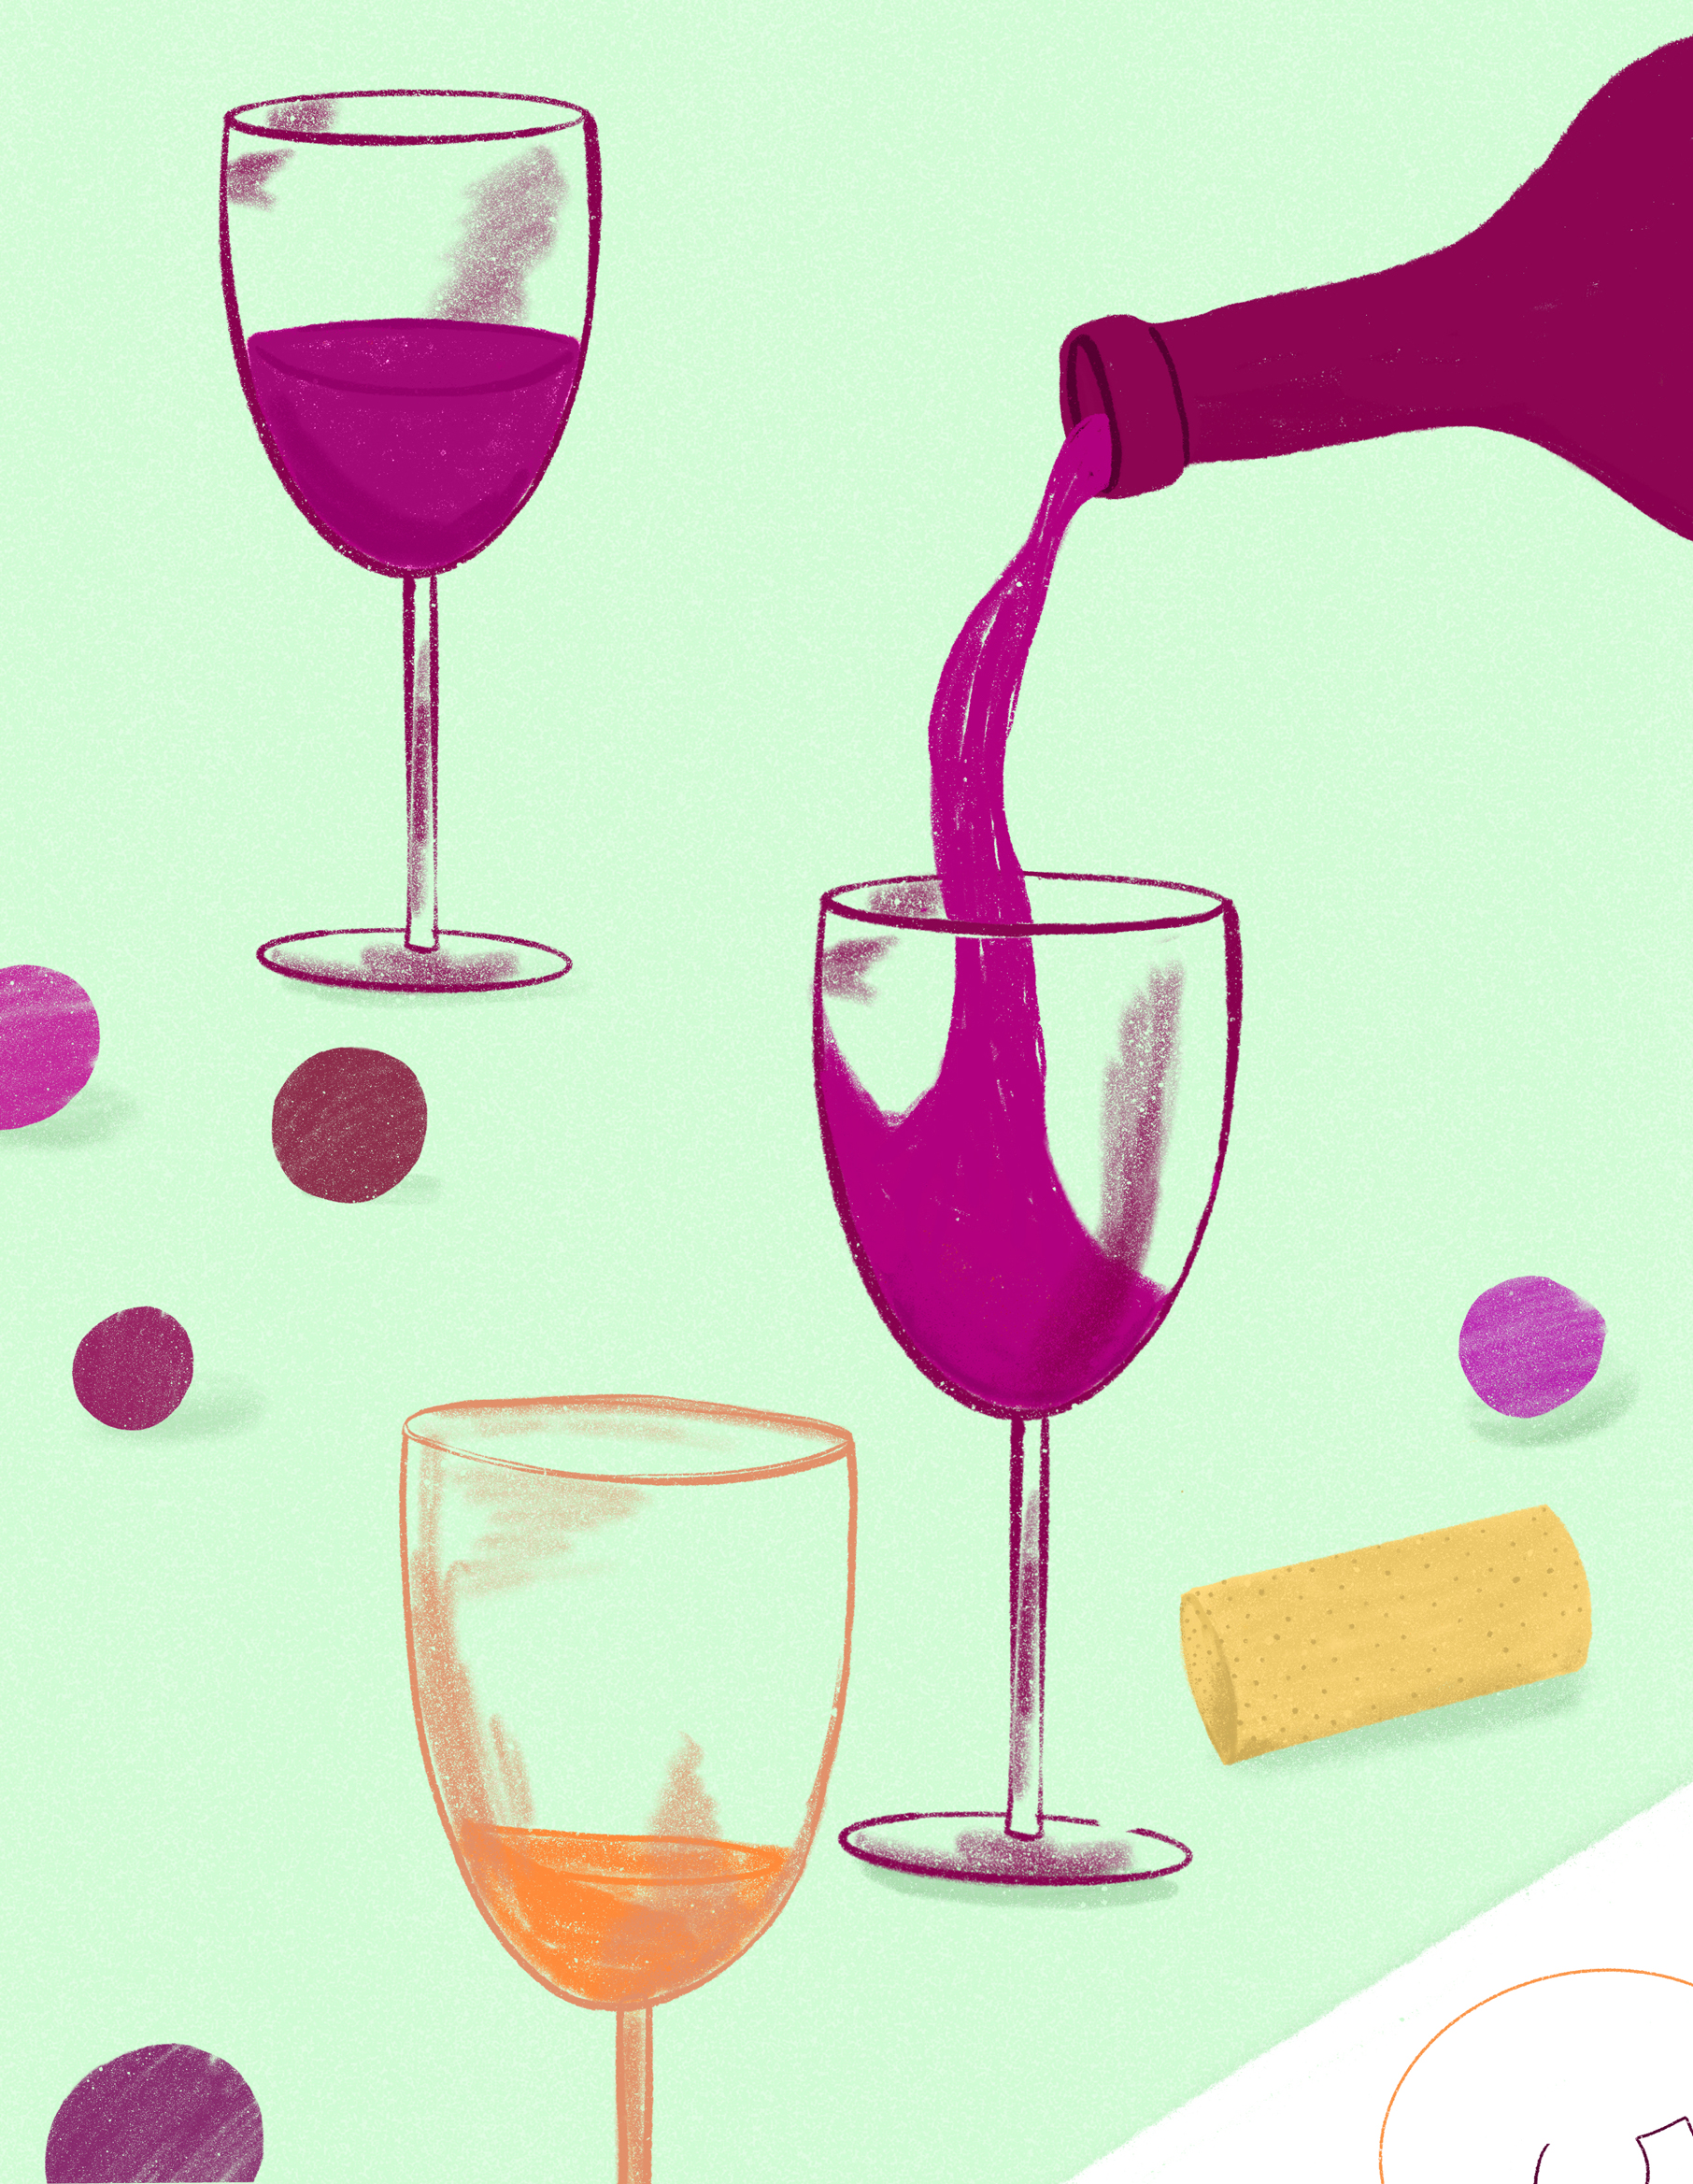 Glaas of Wine Illustartion